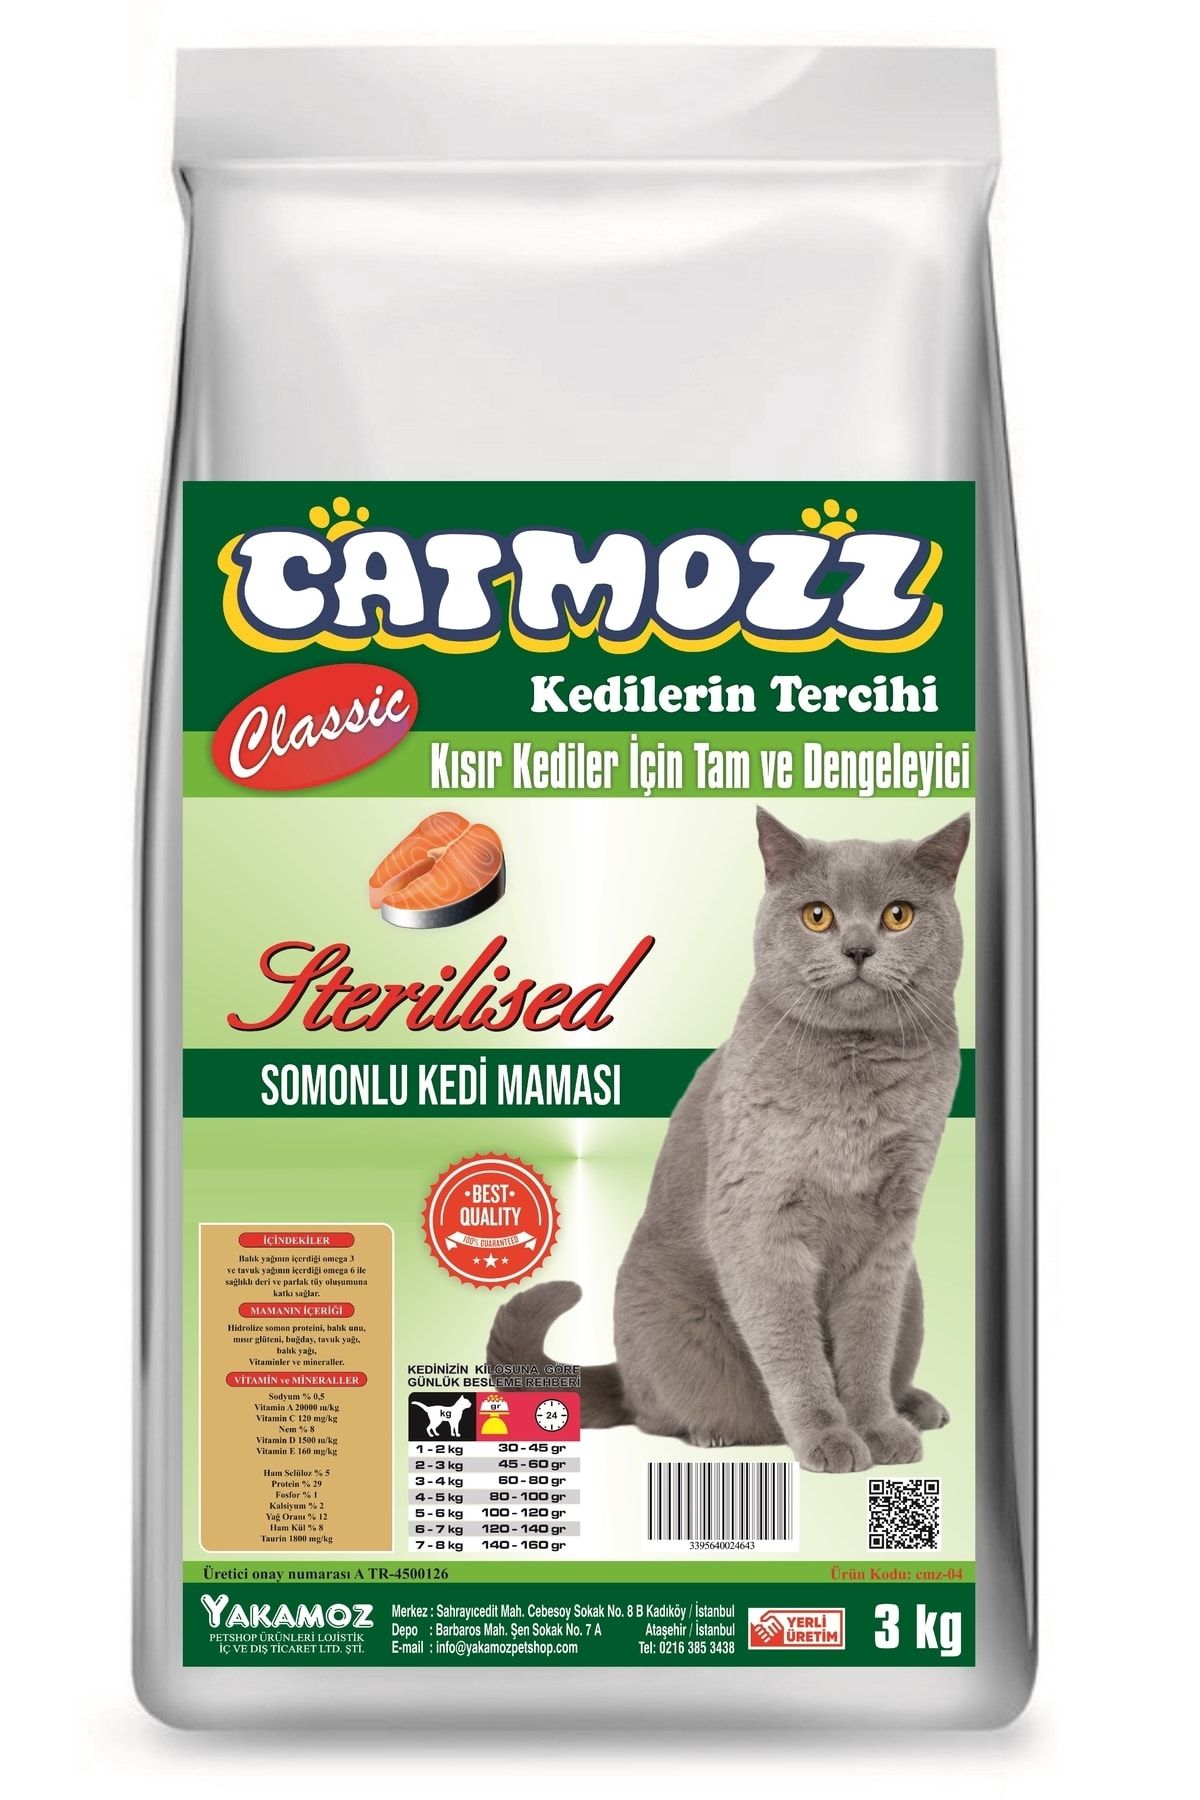 CatMozz Classic Somonlu Sterilised Kısır Yetişkin Kedi Maması 3 Kg